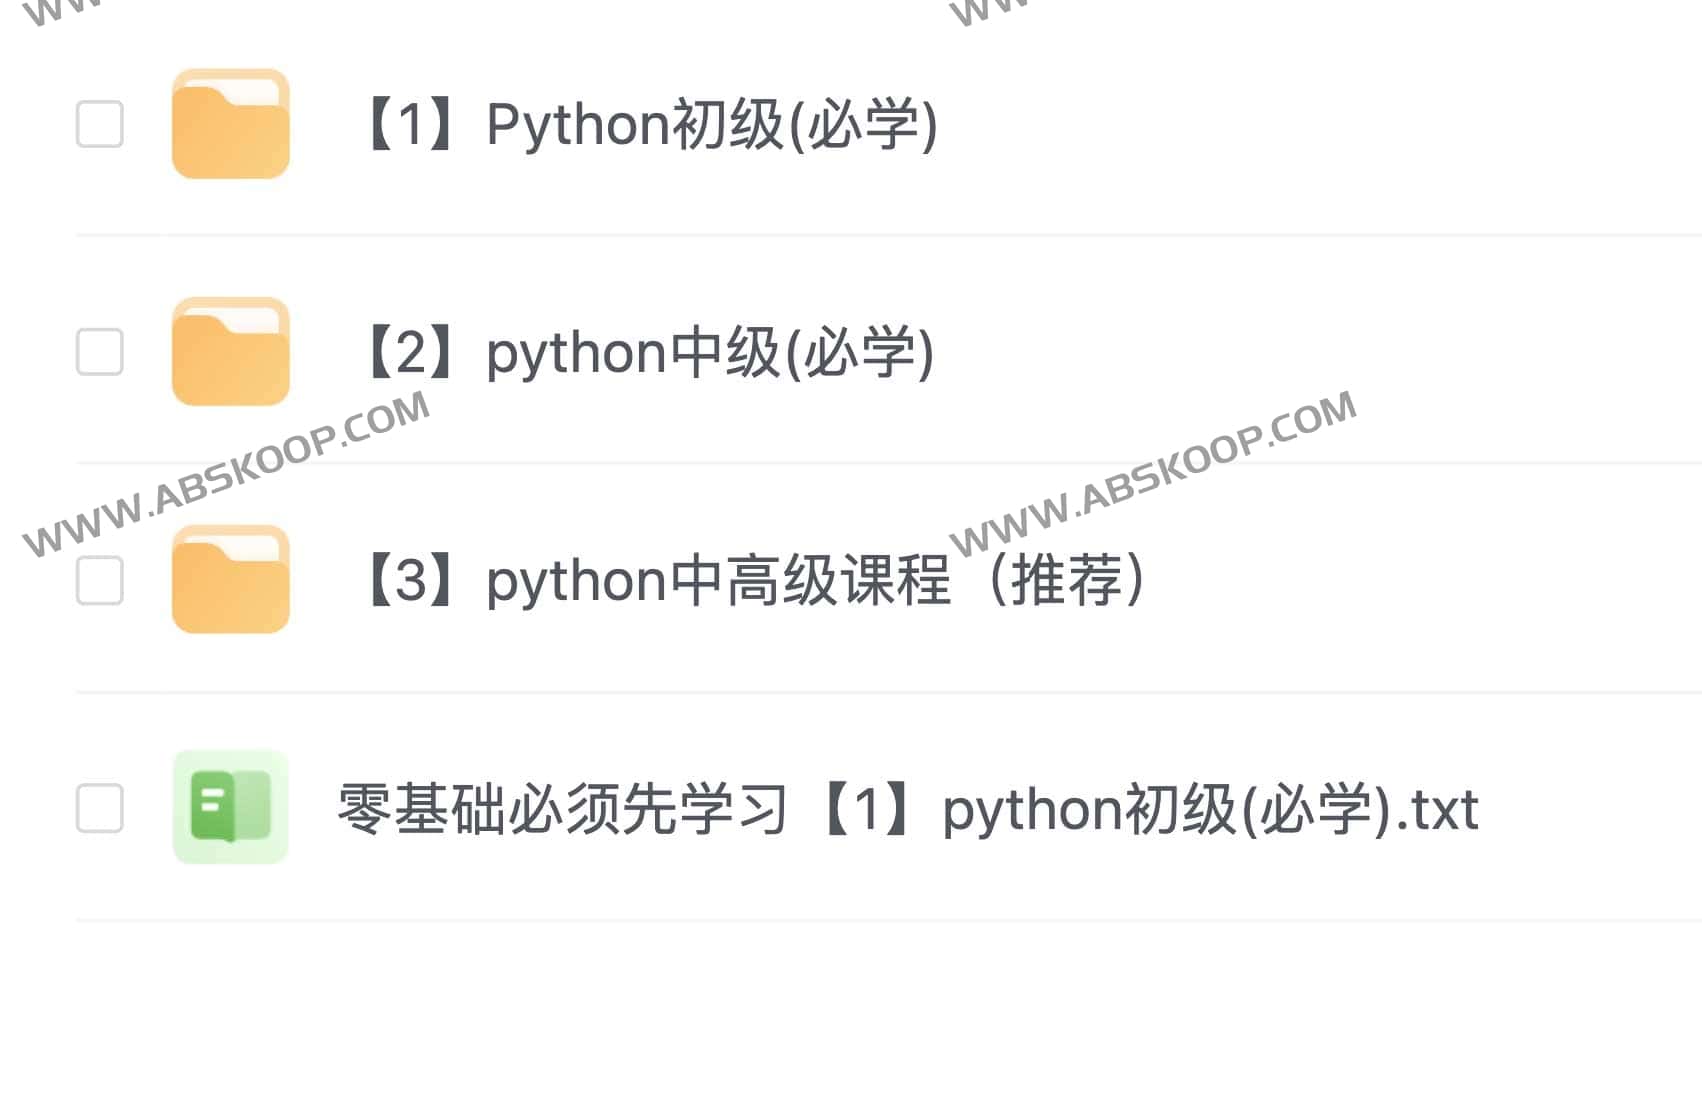 Python开发就业课 【黑马程序员】